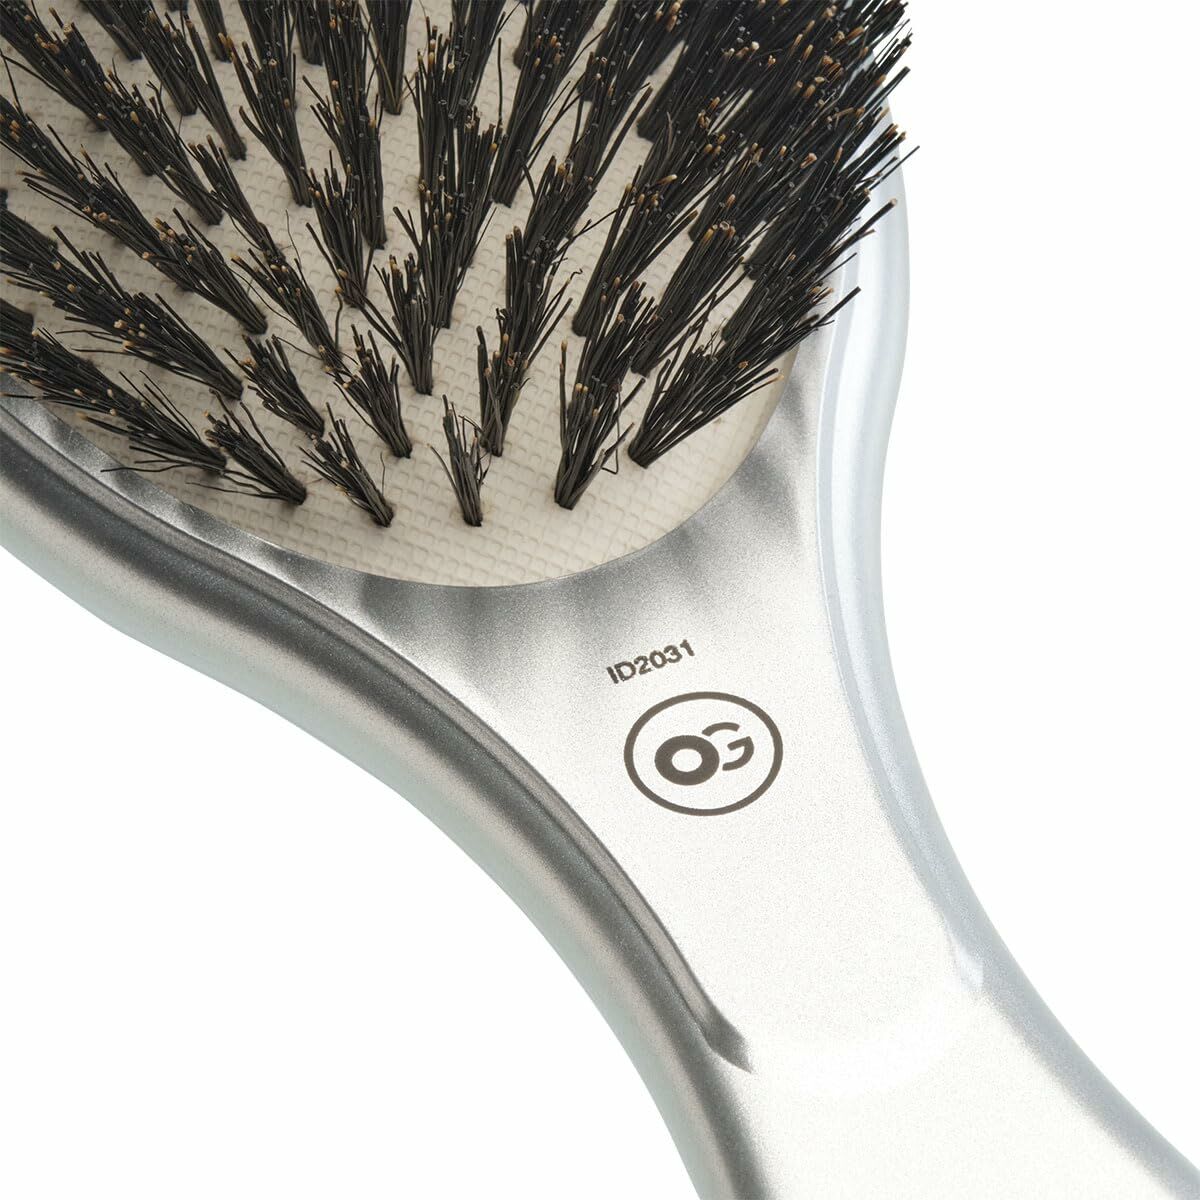 Detangling Hairbrush Olivia Garden CERAMIC+ION